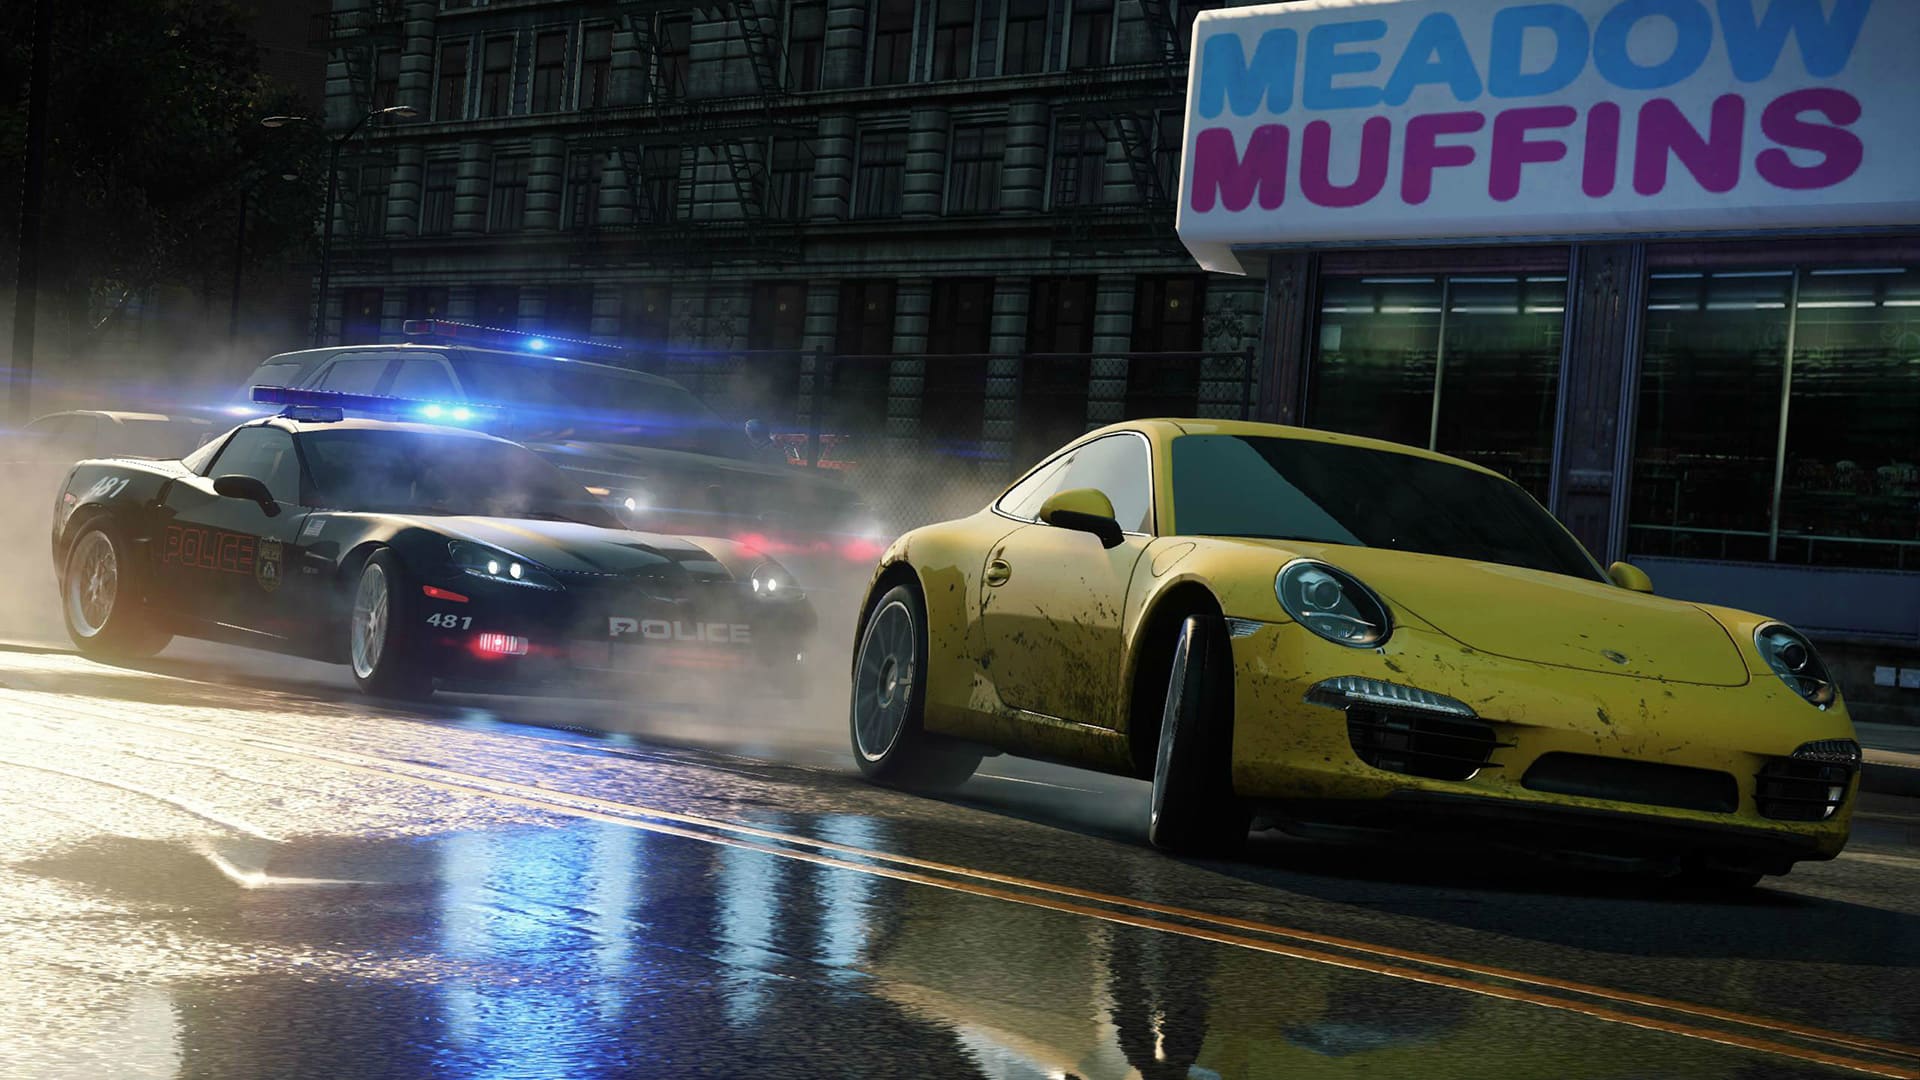 schrobben klein Wiskundige Need For Speed Most Wanted Review - Matt Brett